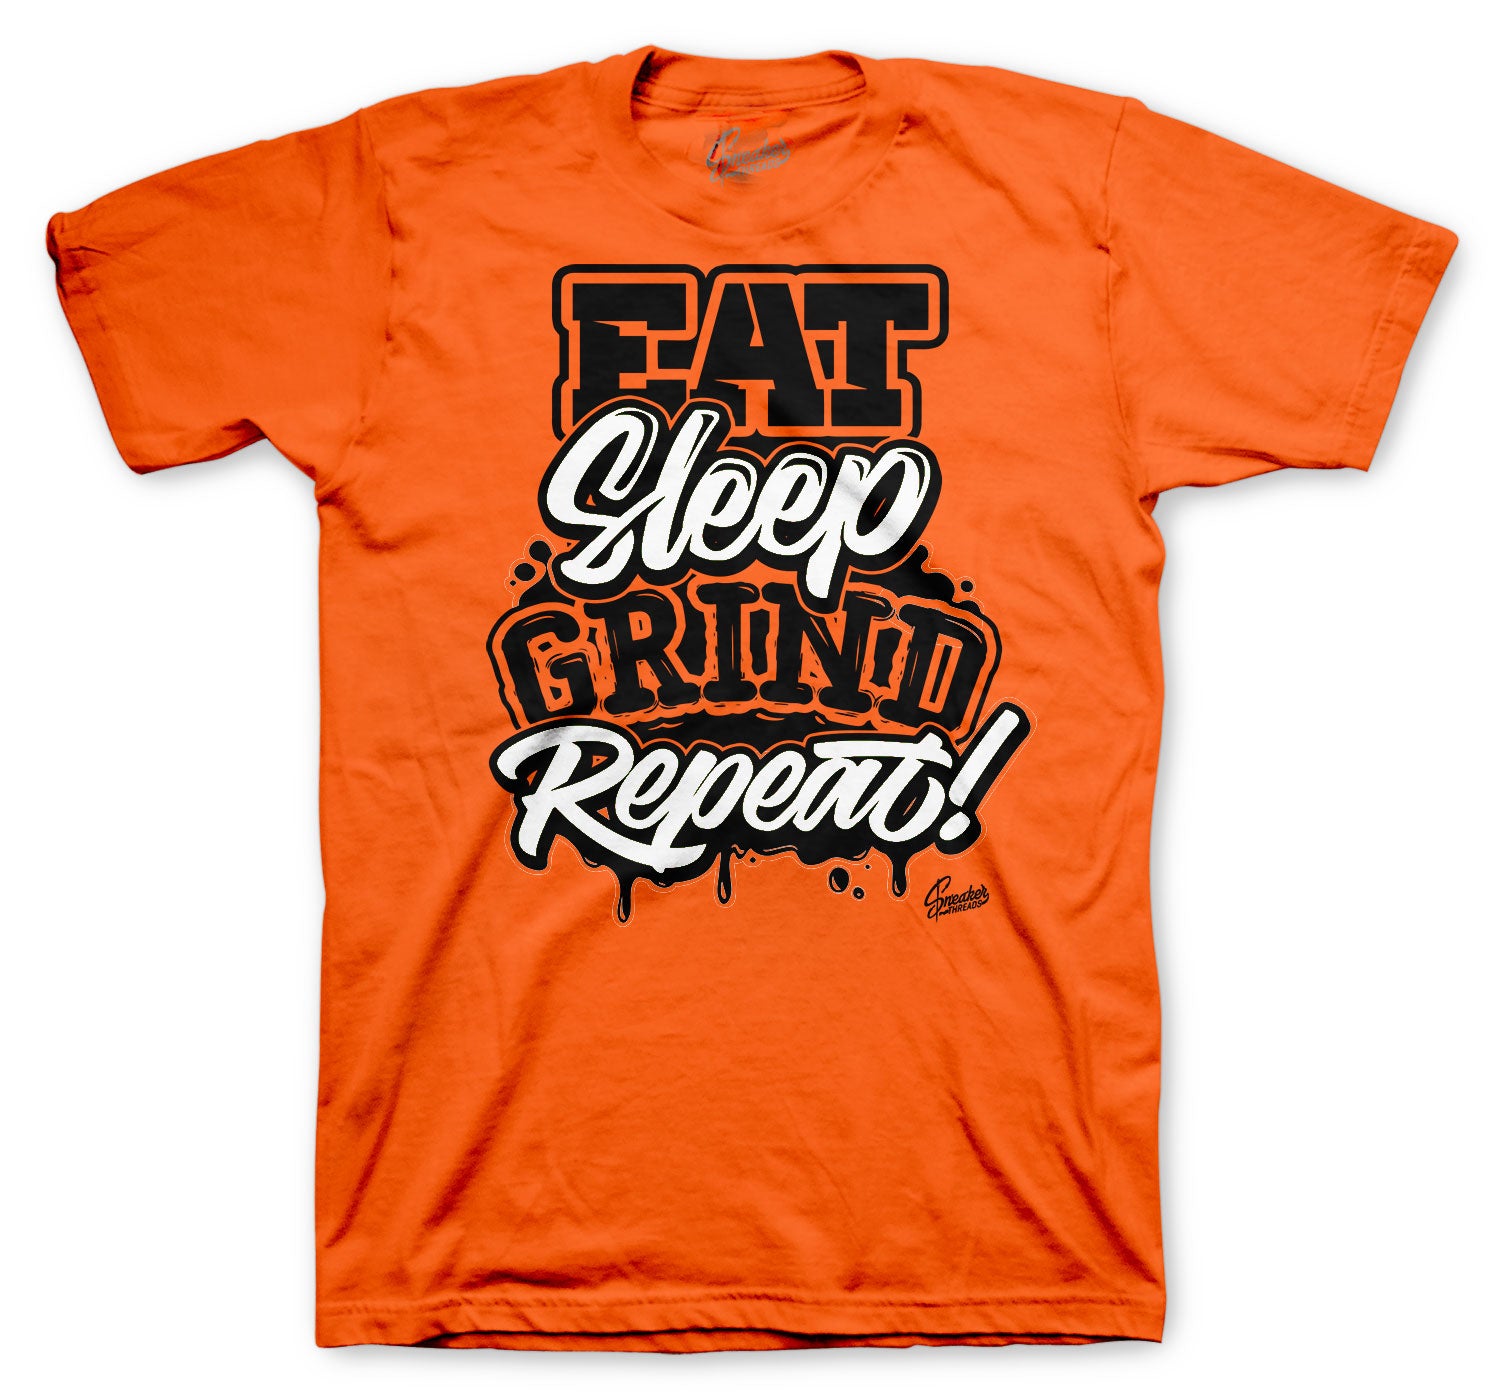 Retro 1 Electro Orange Shirt - Struggle Breeds - Orange